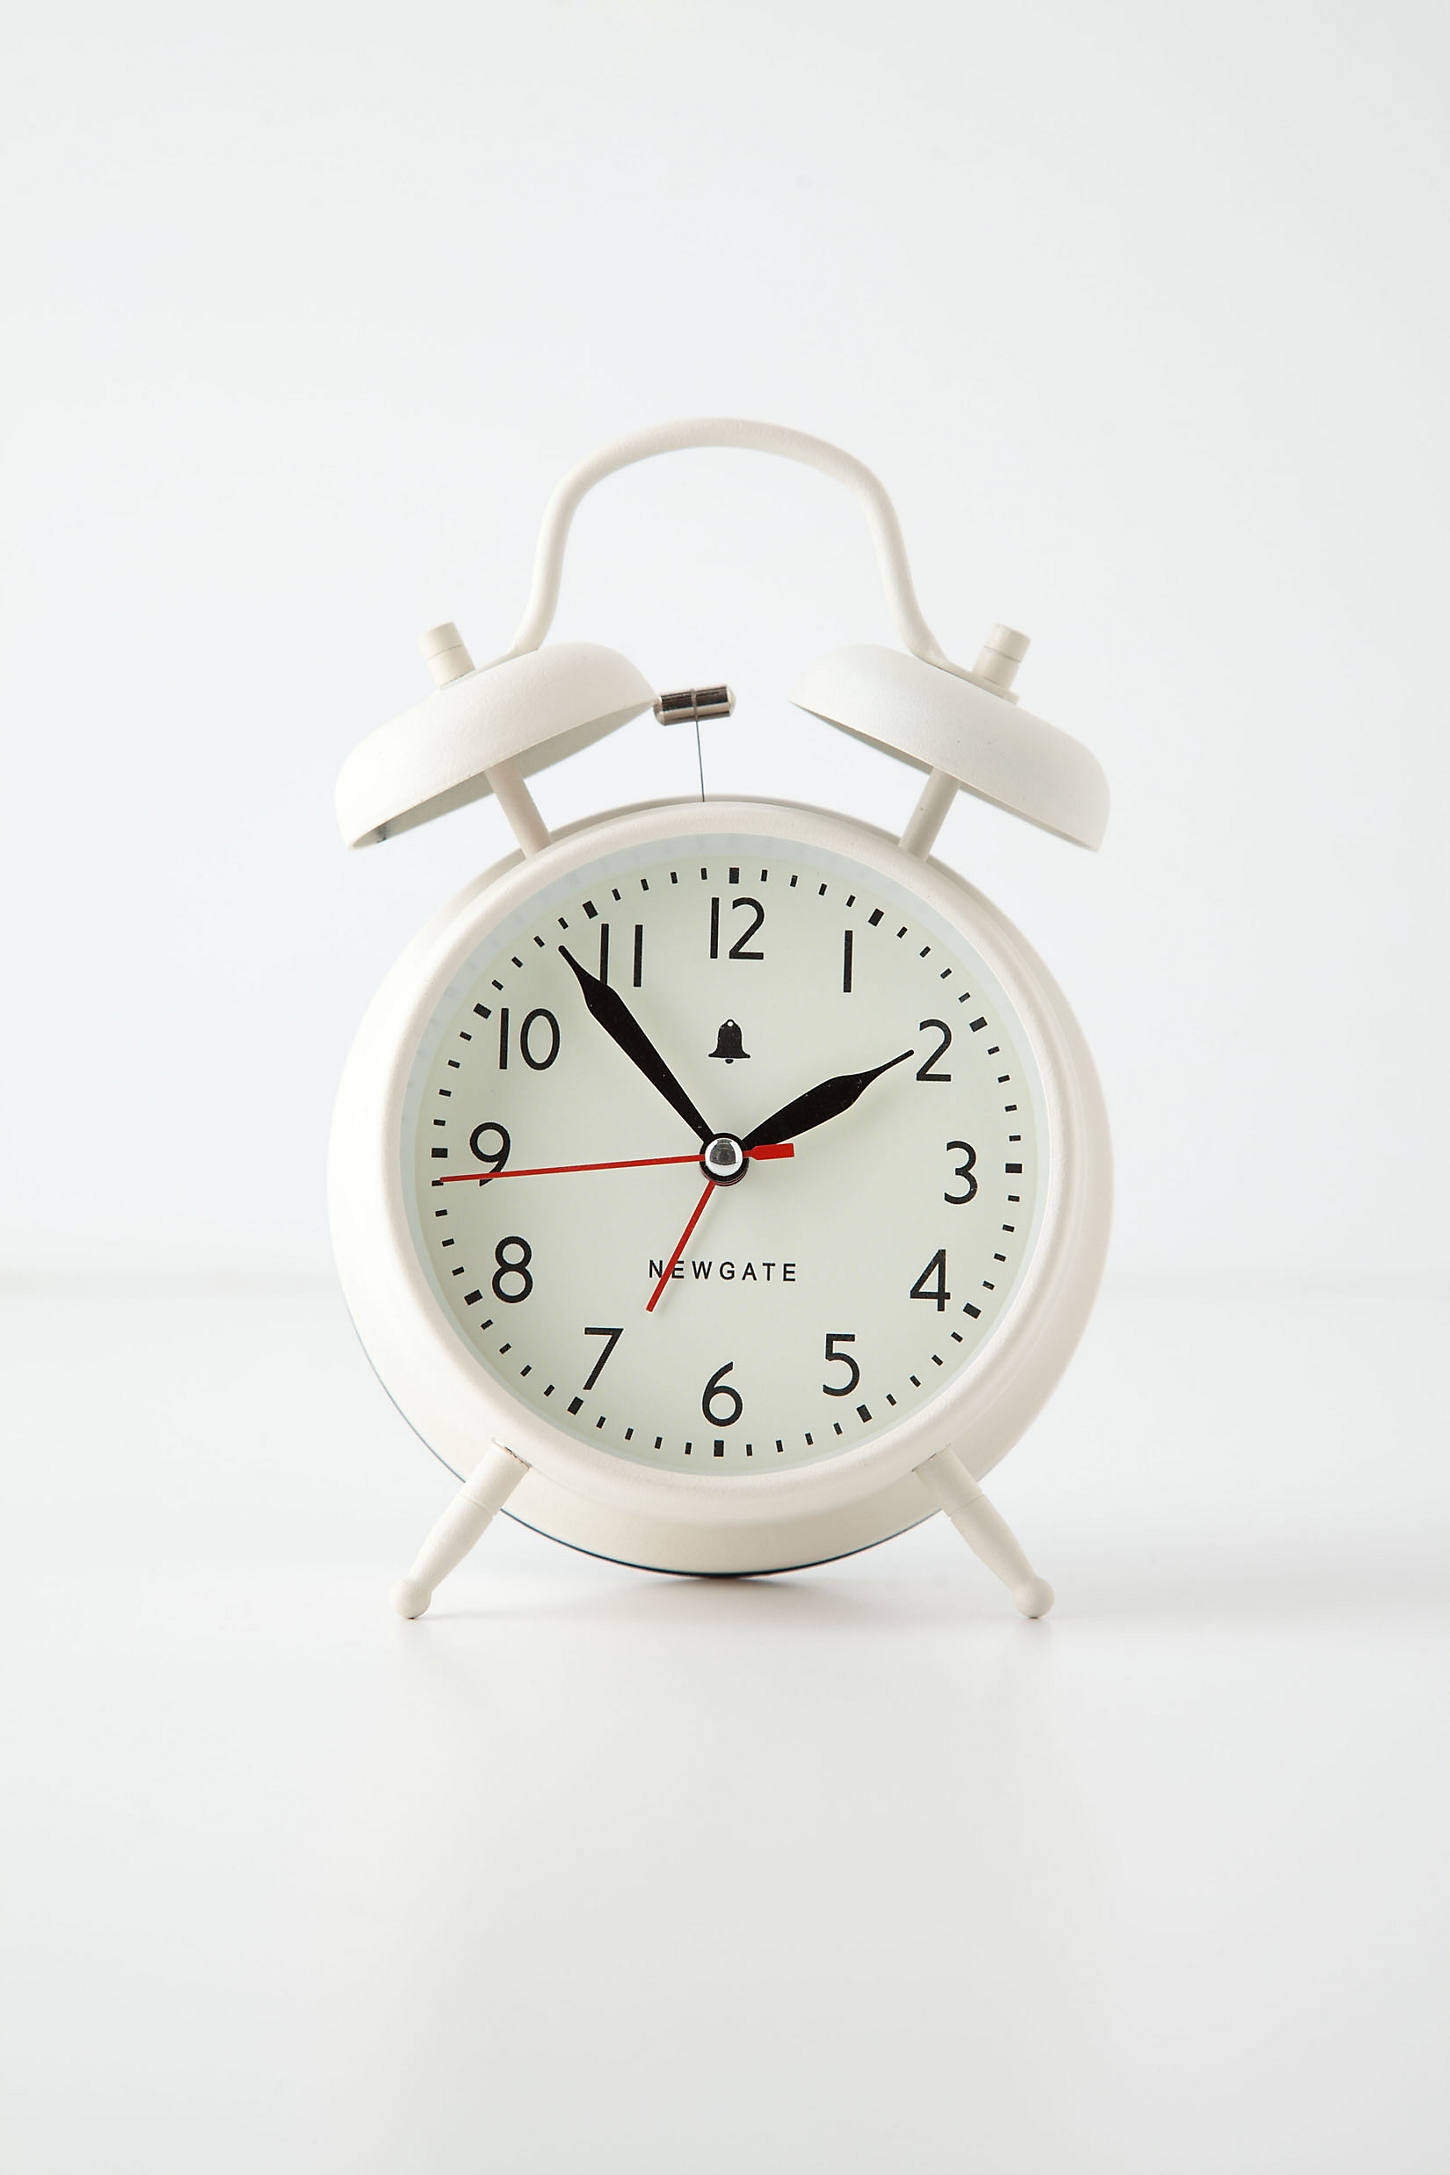 Covent Alarm Clock - Image 0